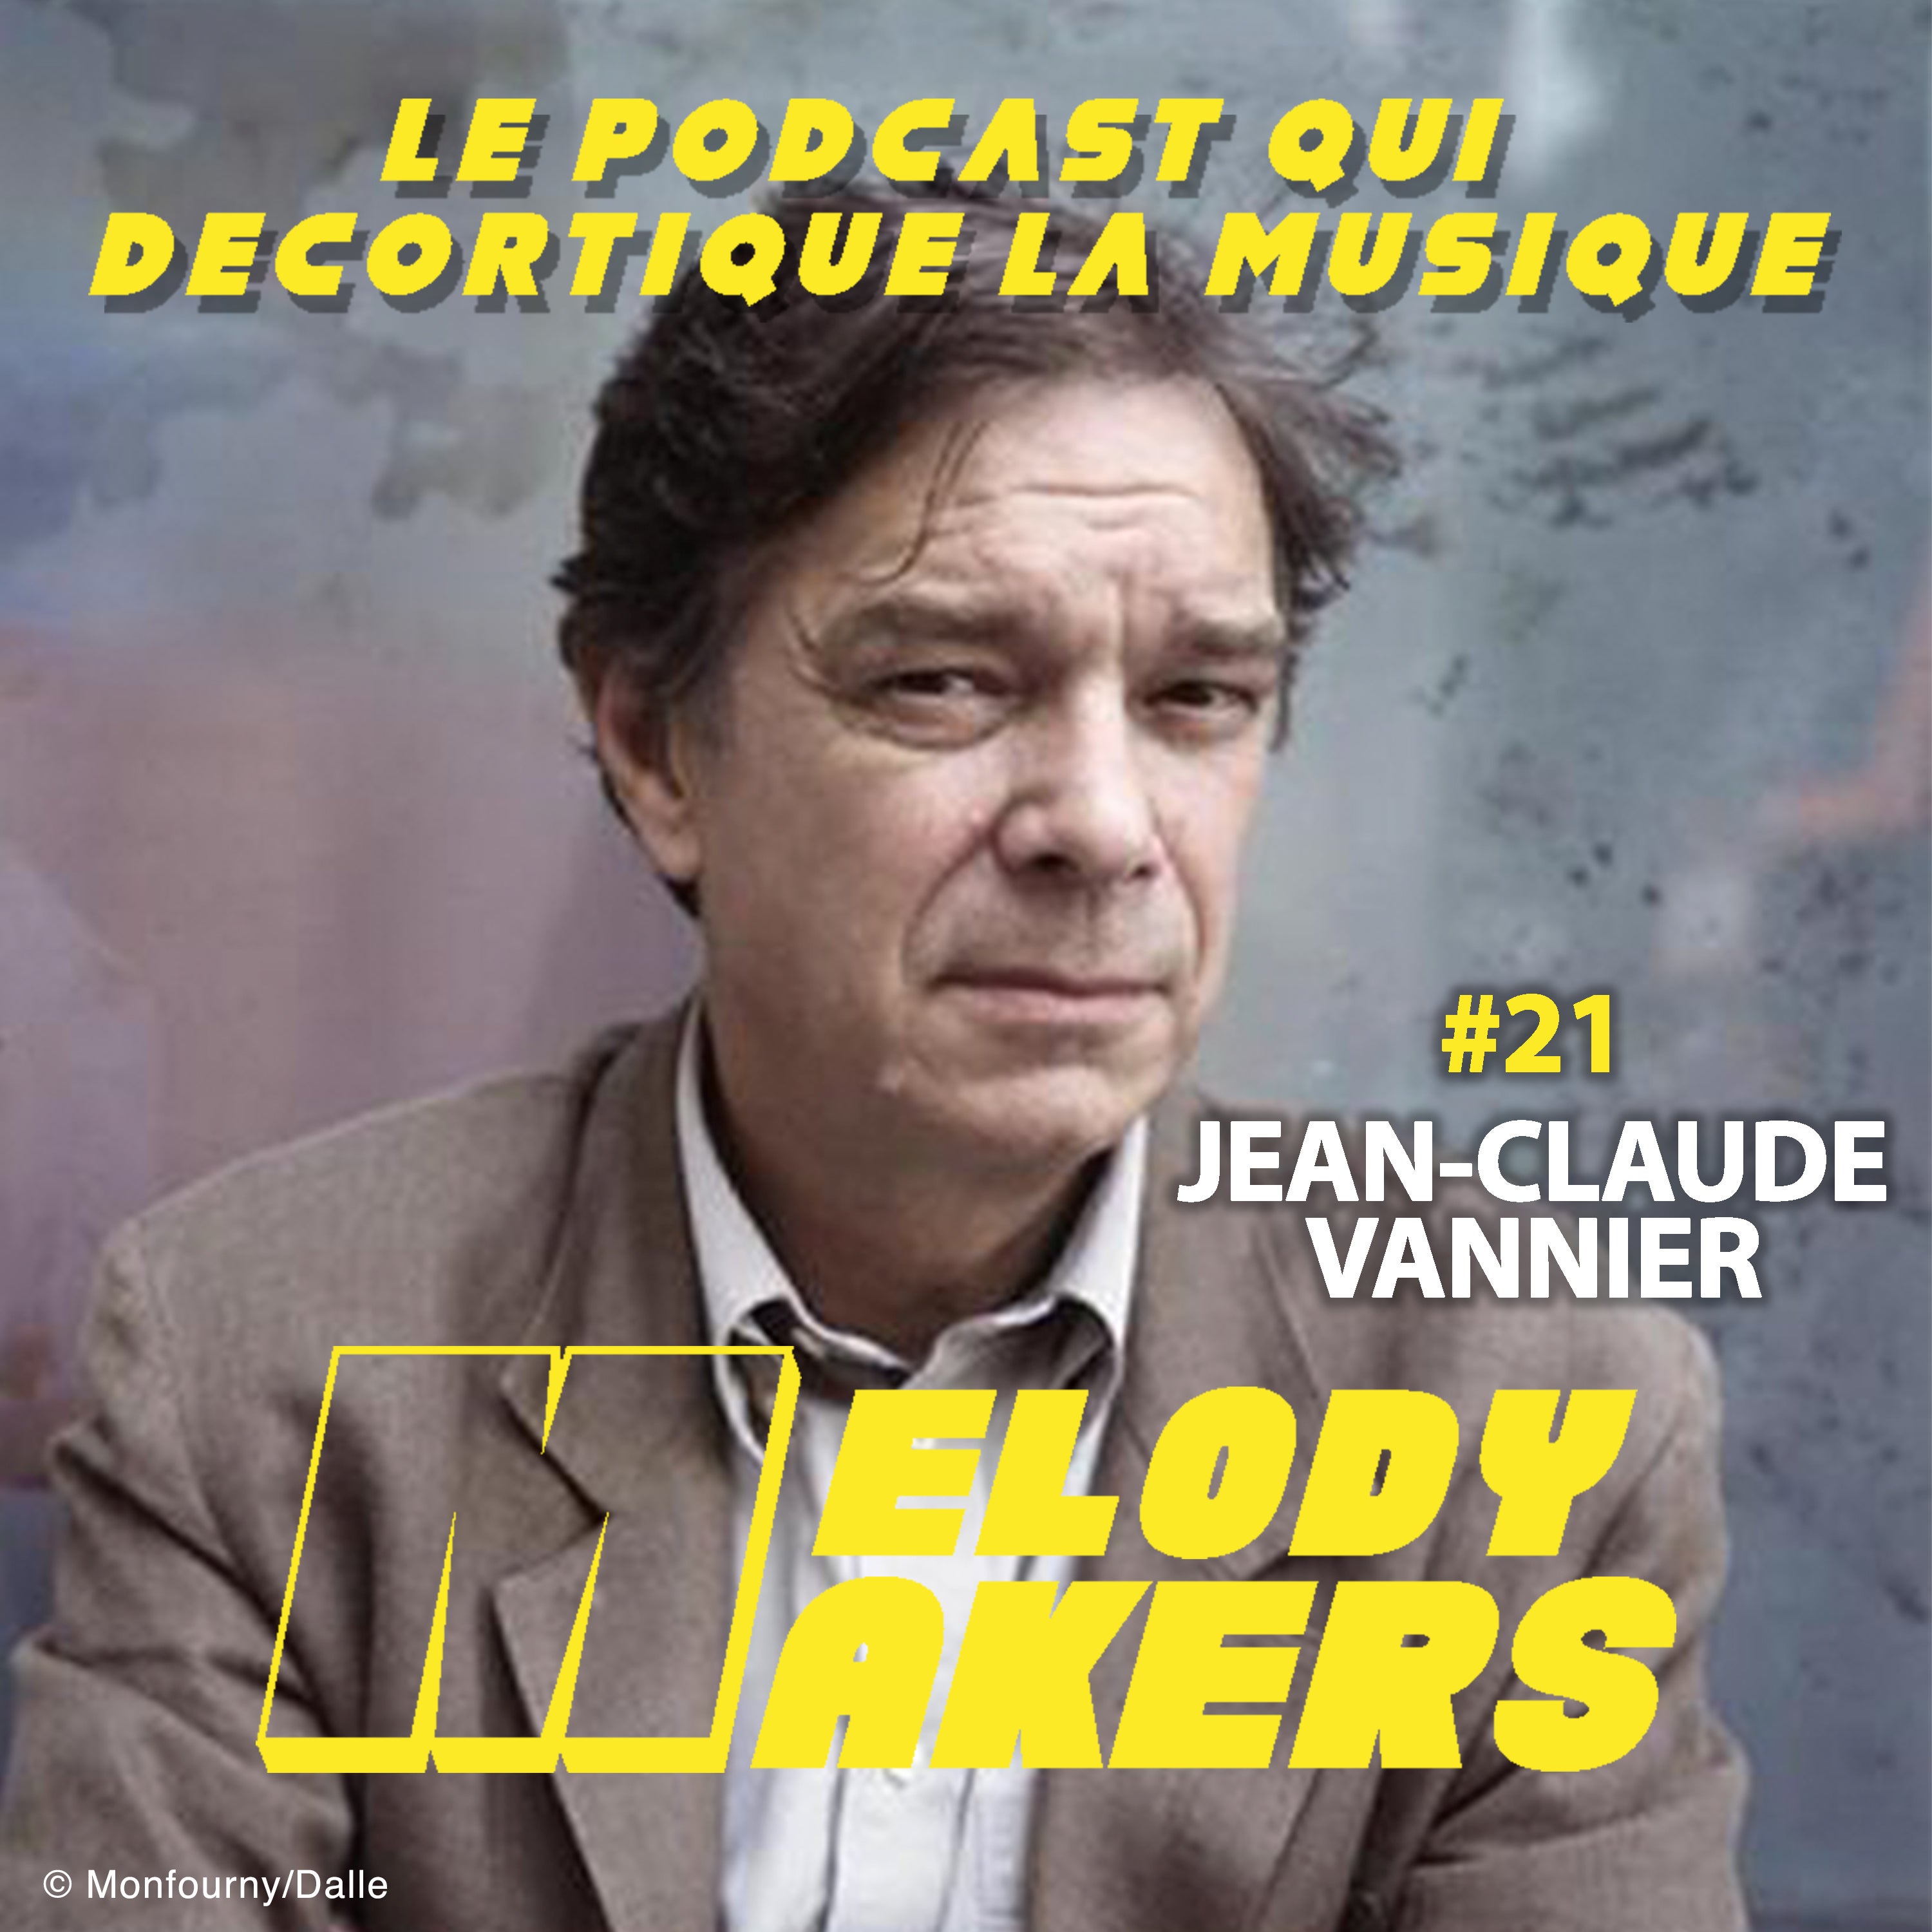 21 - JEAN-CLAUDE VANNIER : compositeur de l'album culte 'Histoire de Melody Nelson' de Serge Gainsbourg